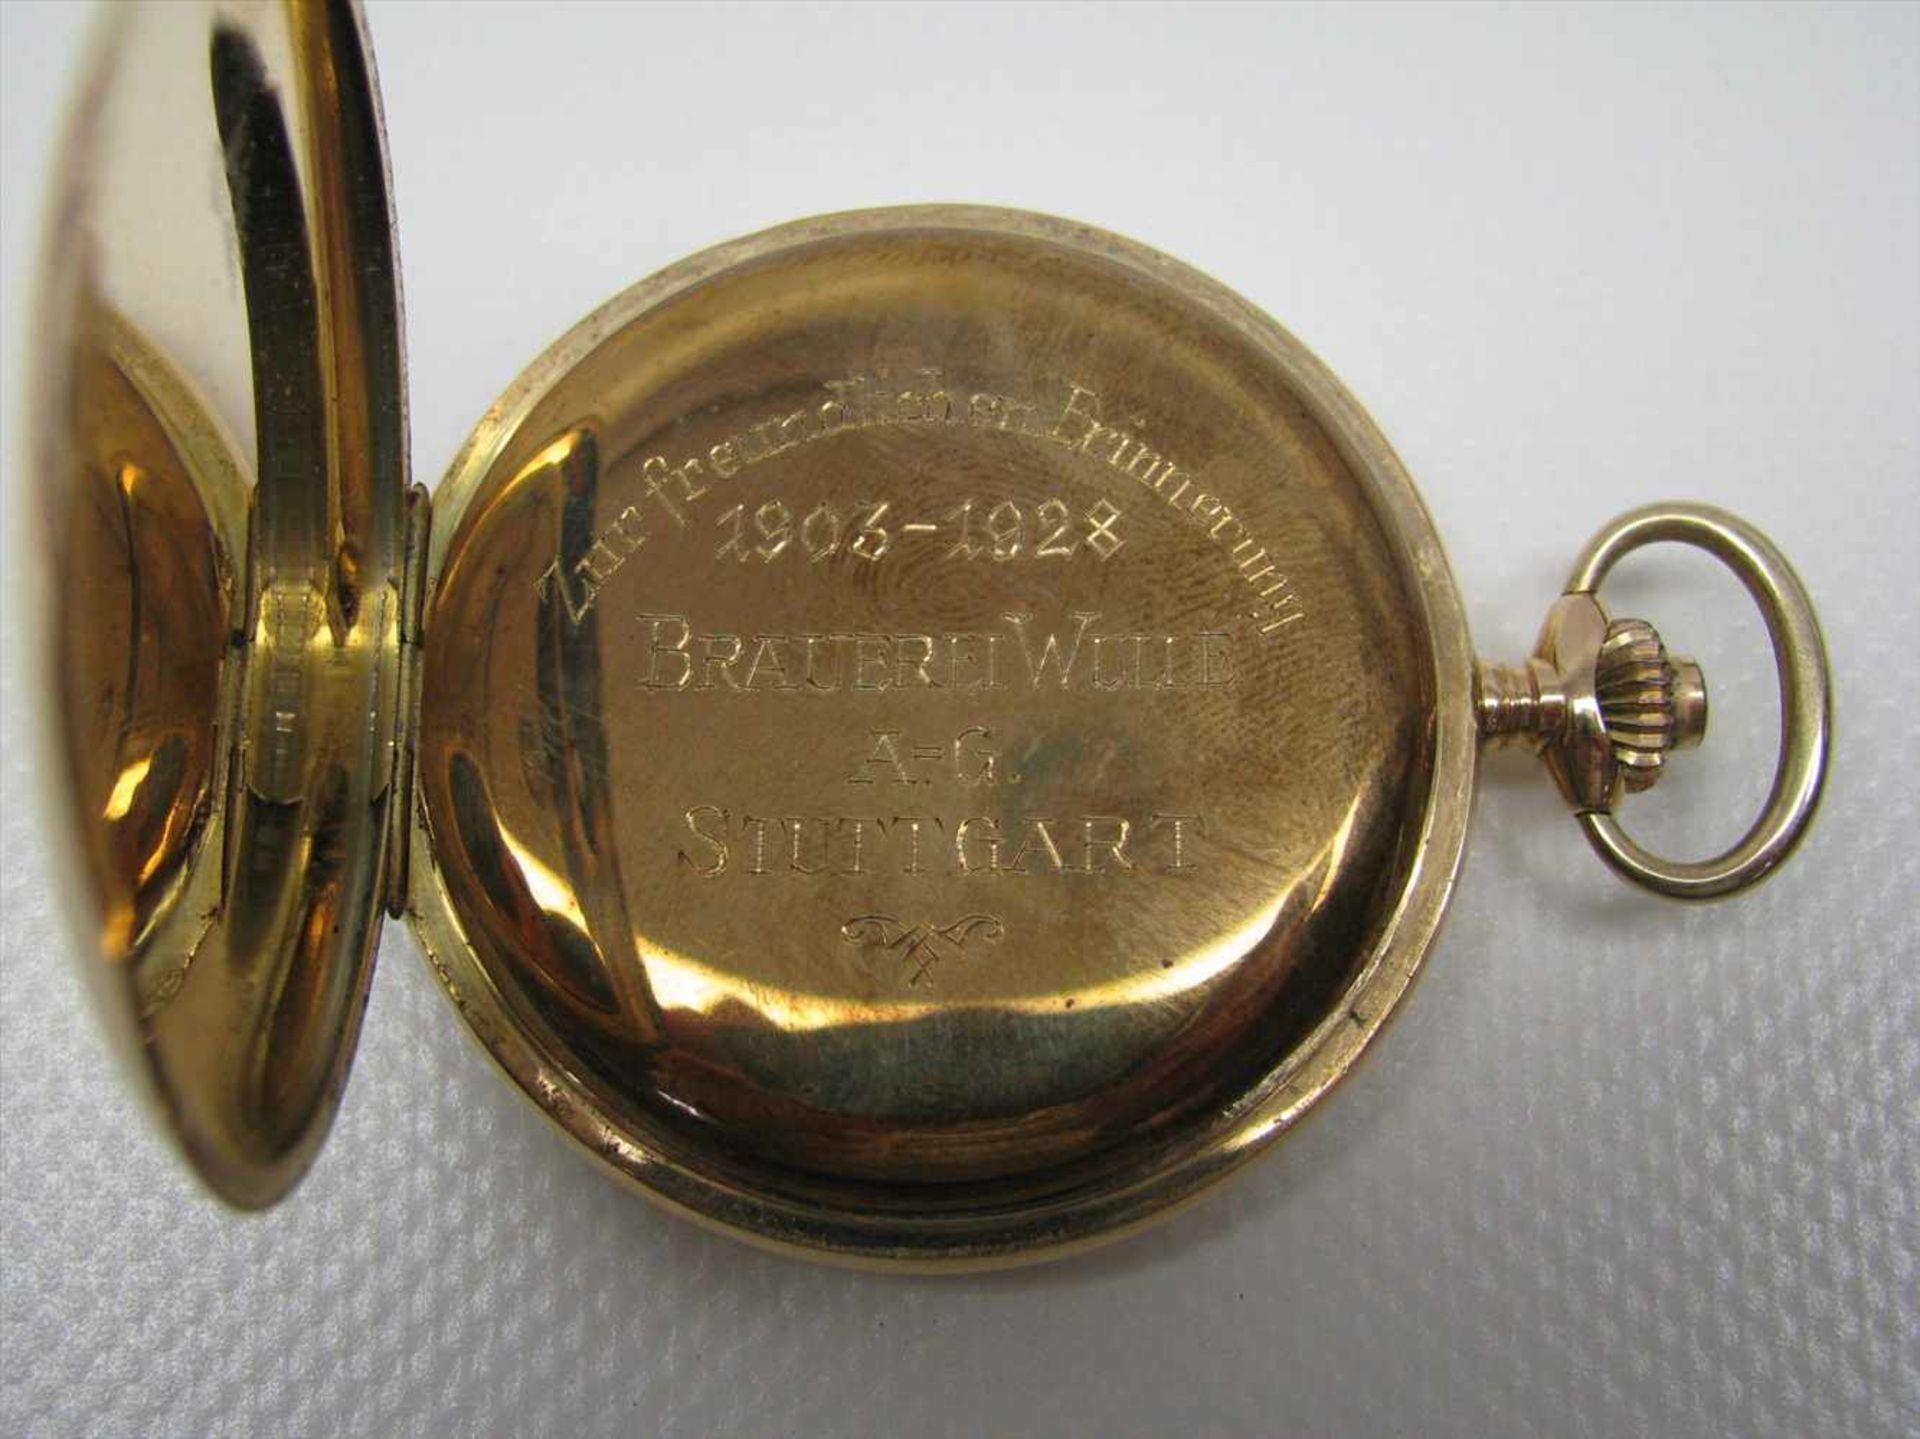 Sprungdeckeltaschenuhr, Gehäuse 585er Gelbgold, Innendeckel Metall mit Gravur "Brauerei Wulle - Bild 3 aus 4